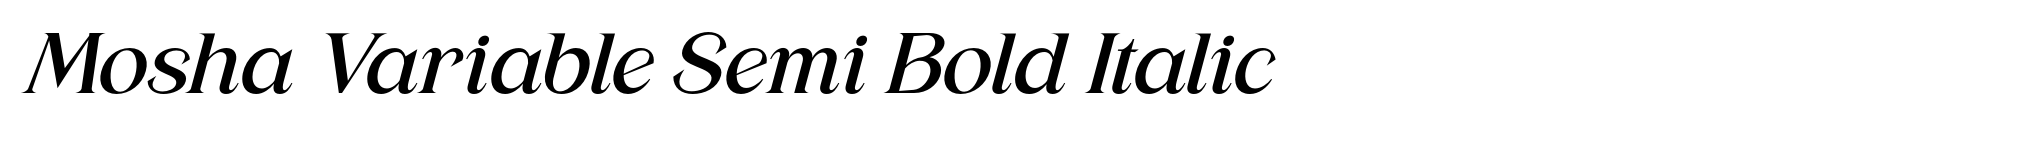 Mosha Variable Semi Bold Italic image